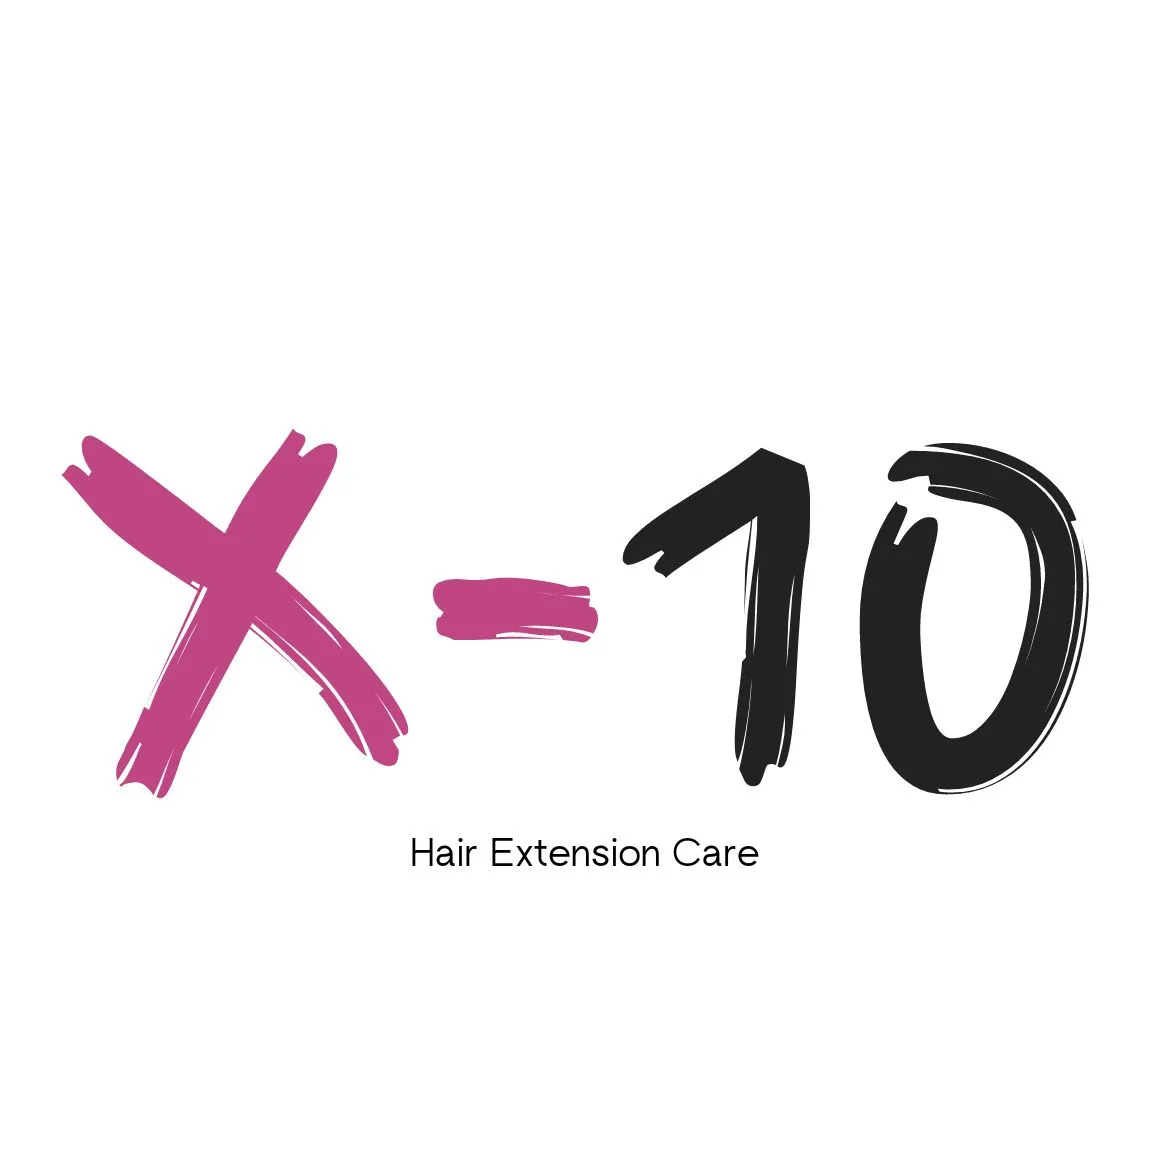 X10 Haircare